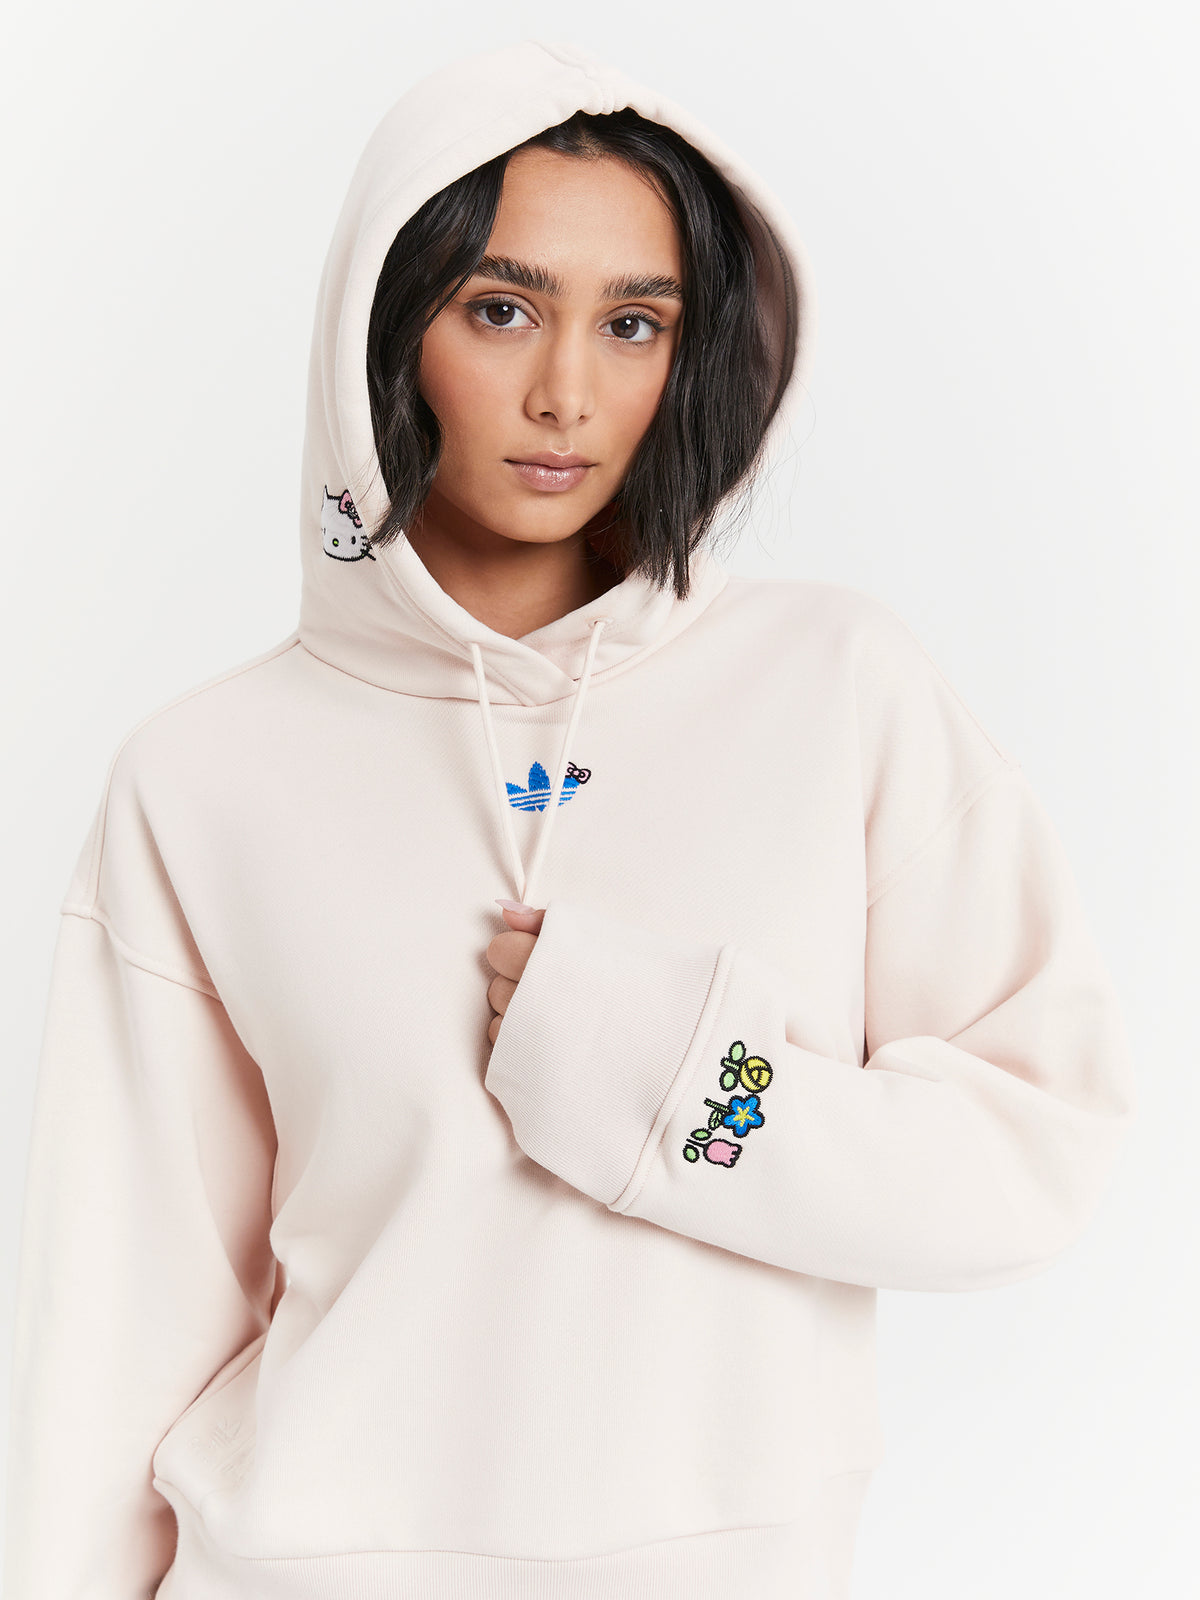 Adidas Originals x Hello Kitty Hoodie in Wonder Quartz